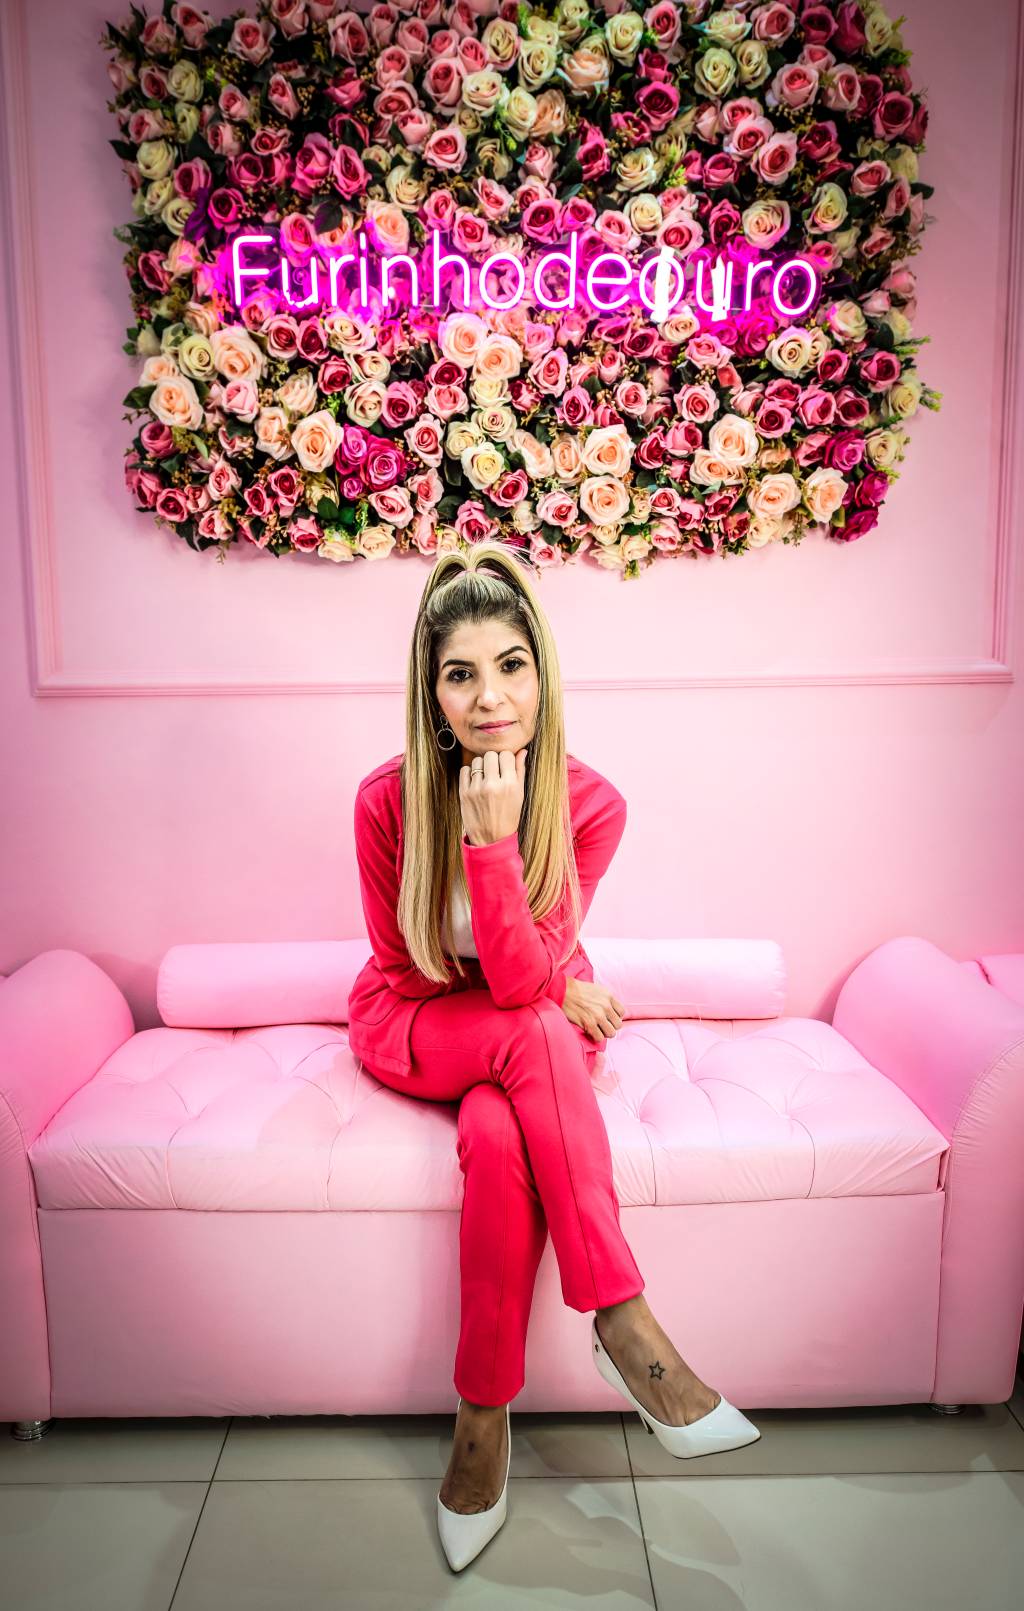 Rachel Strazzeri, da Furinho de Ouro, posa de pernas cruzadas em sofá rosa claro. Veste blazer e calça rosa, em tom mais escuro, apoia uma das mãos no queixo e encara a câmera. Ao fundo, na parede, um letreiro em neon com flores exibe o título Furinho de Ouro.